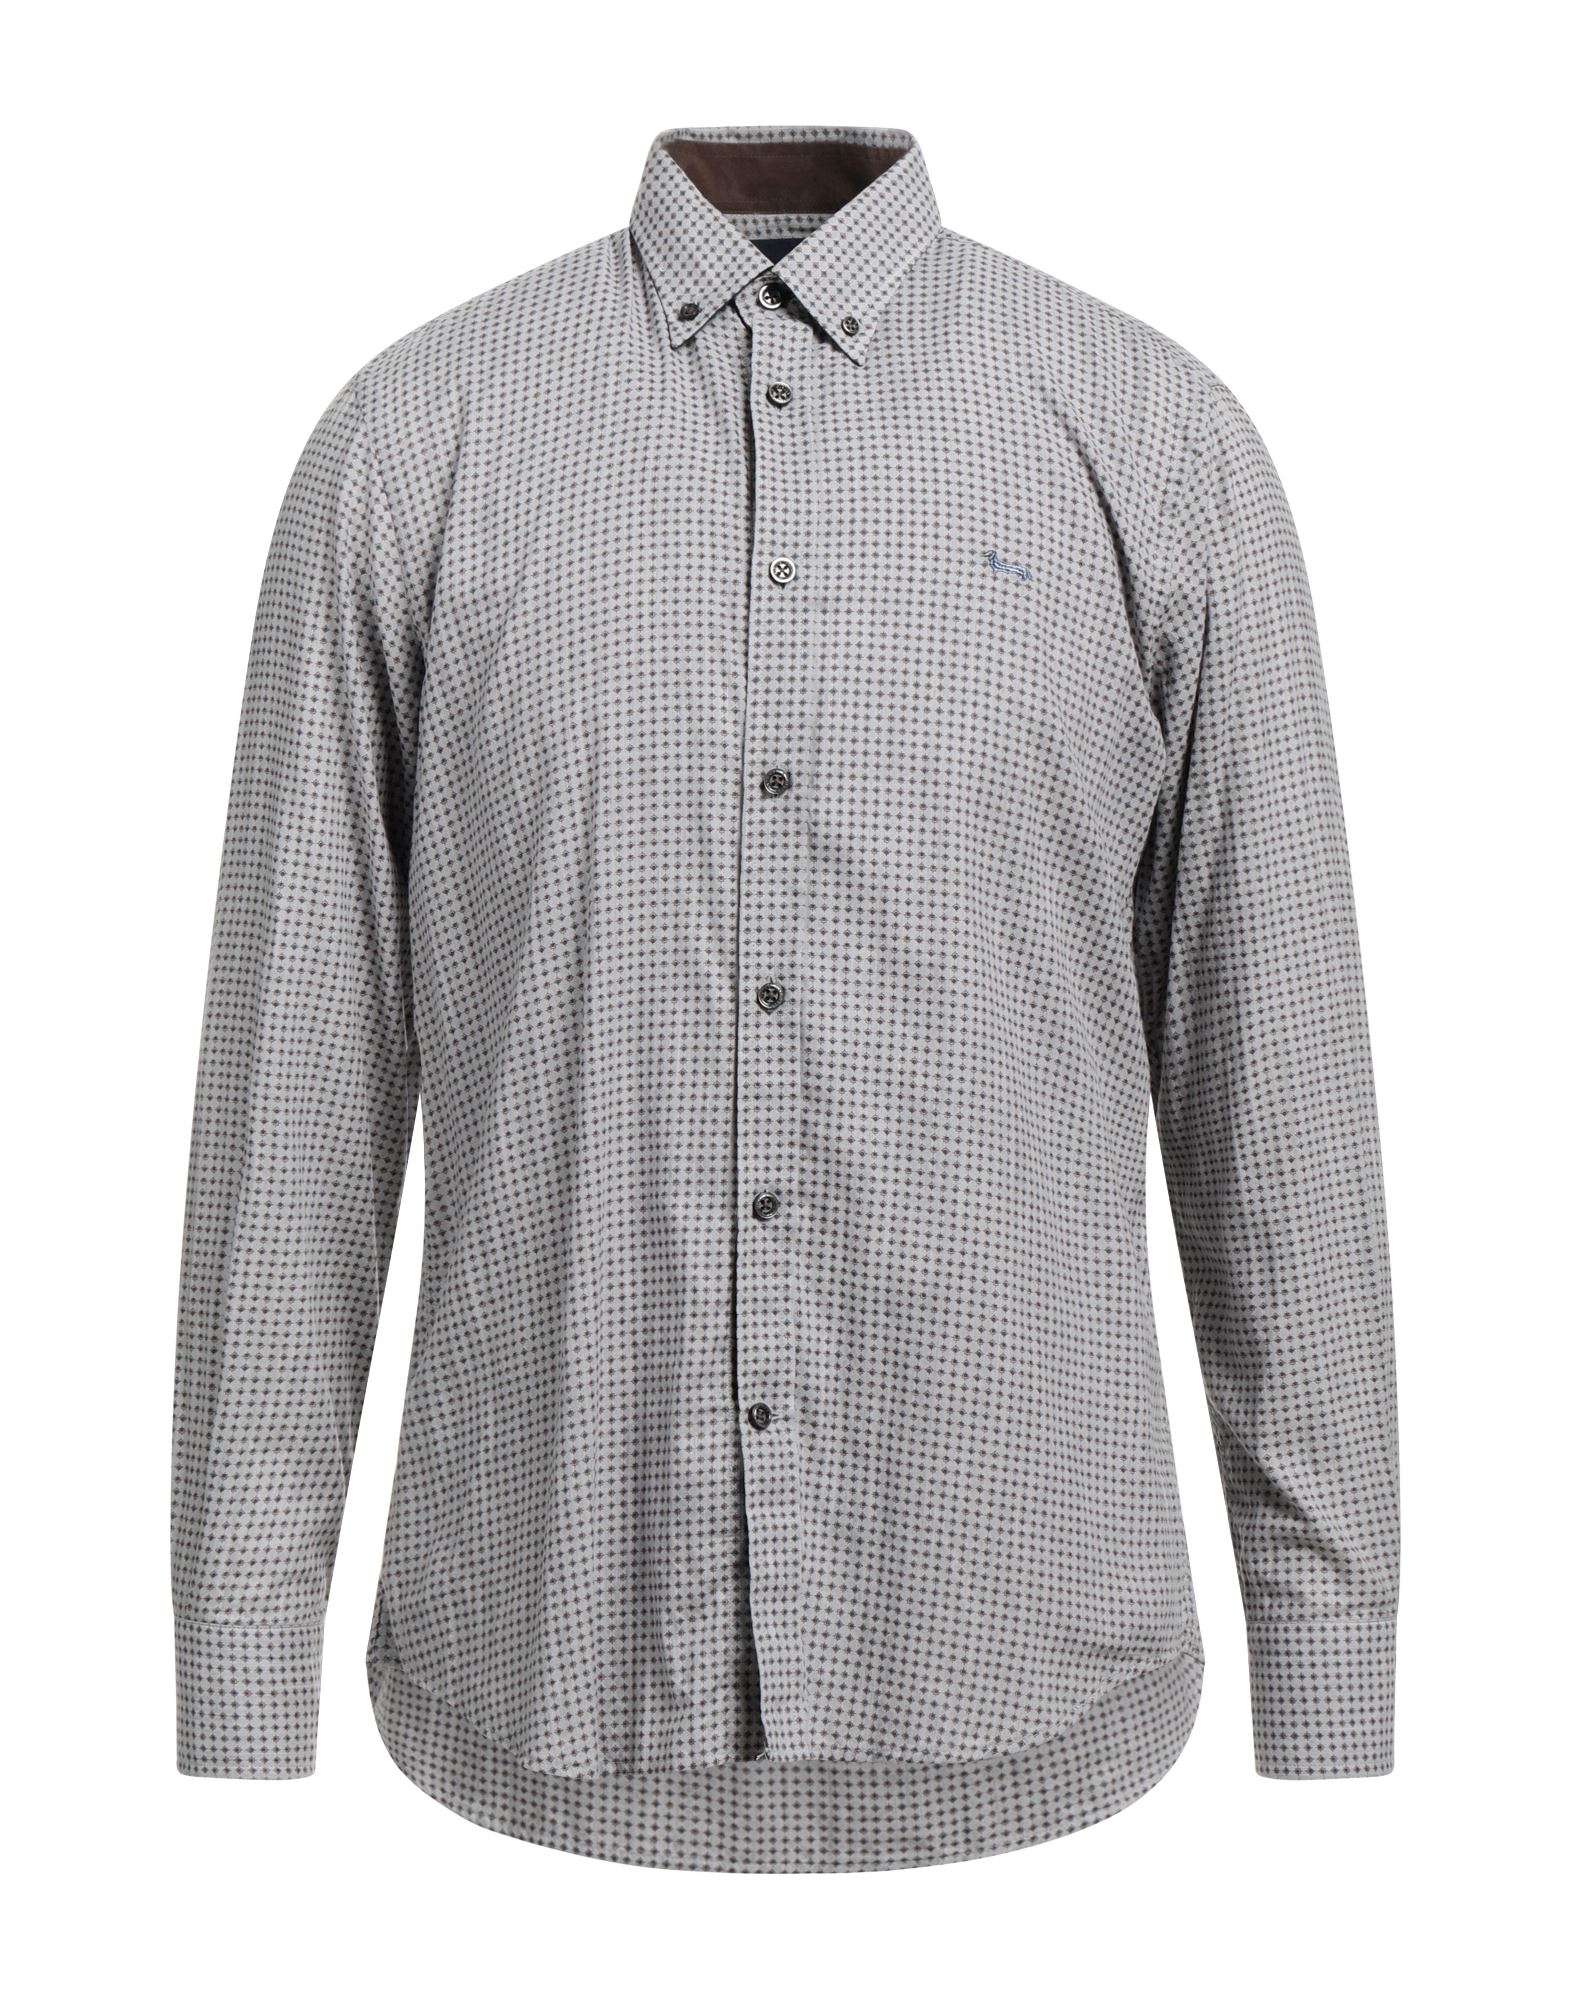 Harmont & Blaine Man Shirt Grey Size L Cotton